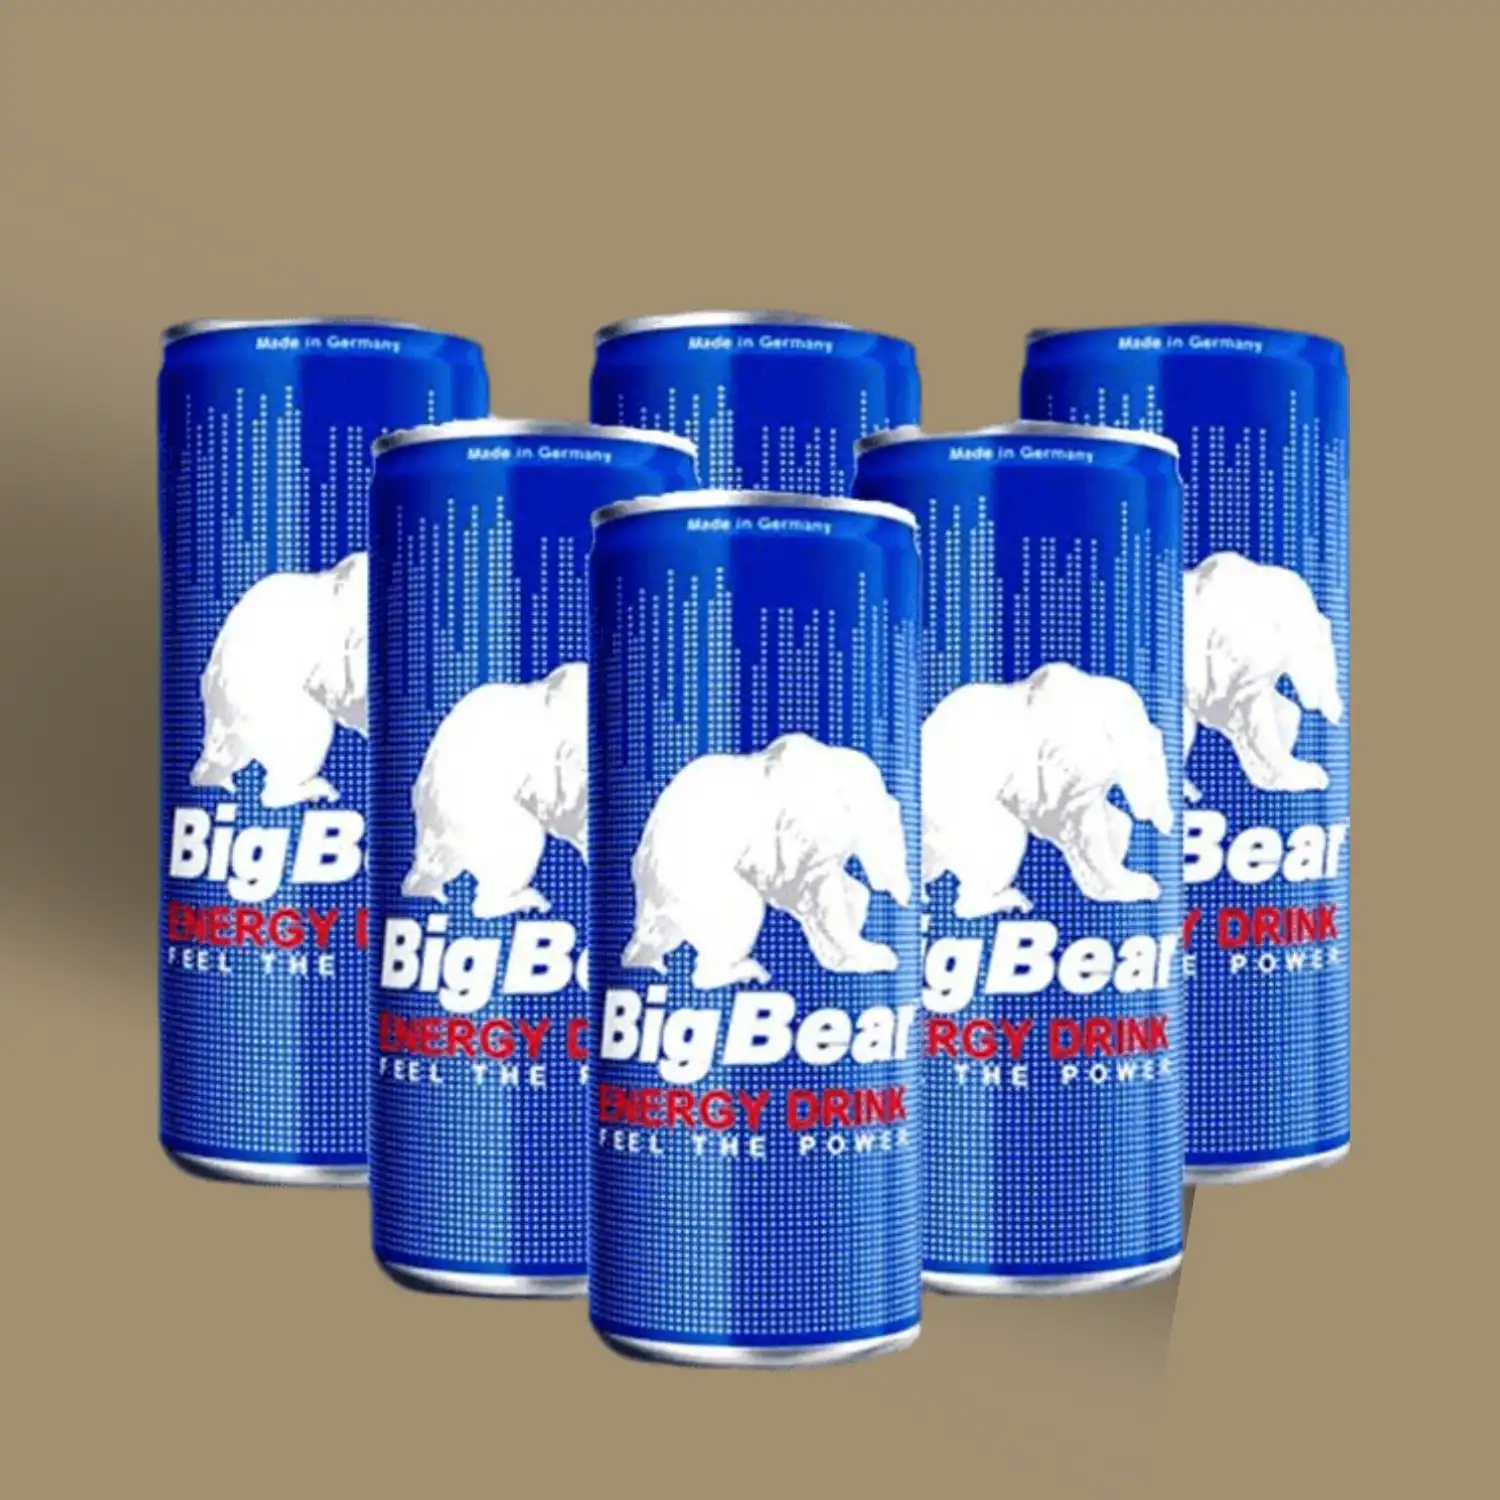 نوشیدنی انرژی زا بیگ بیر (Big Bear)